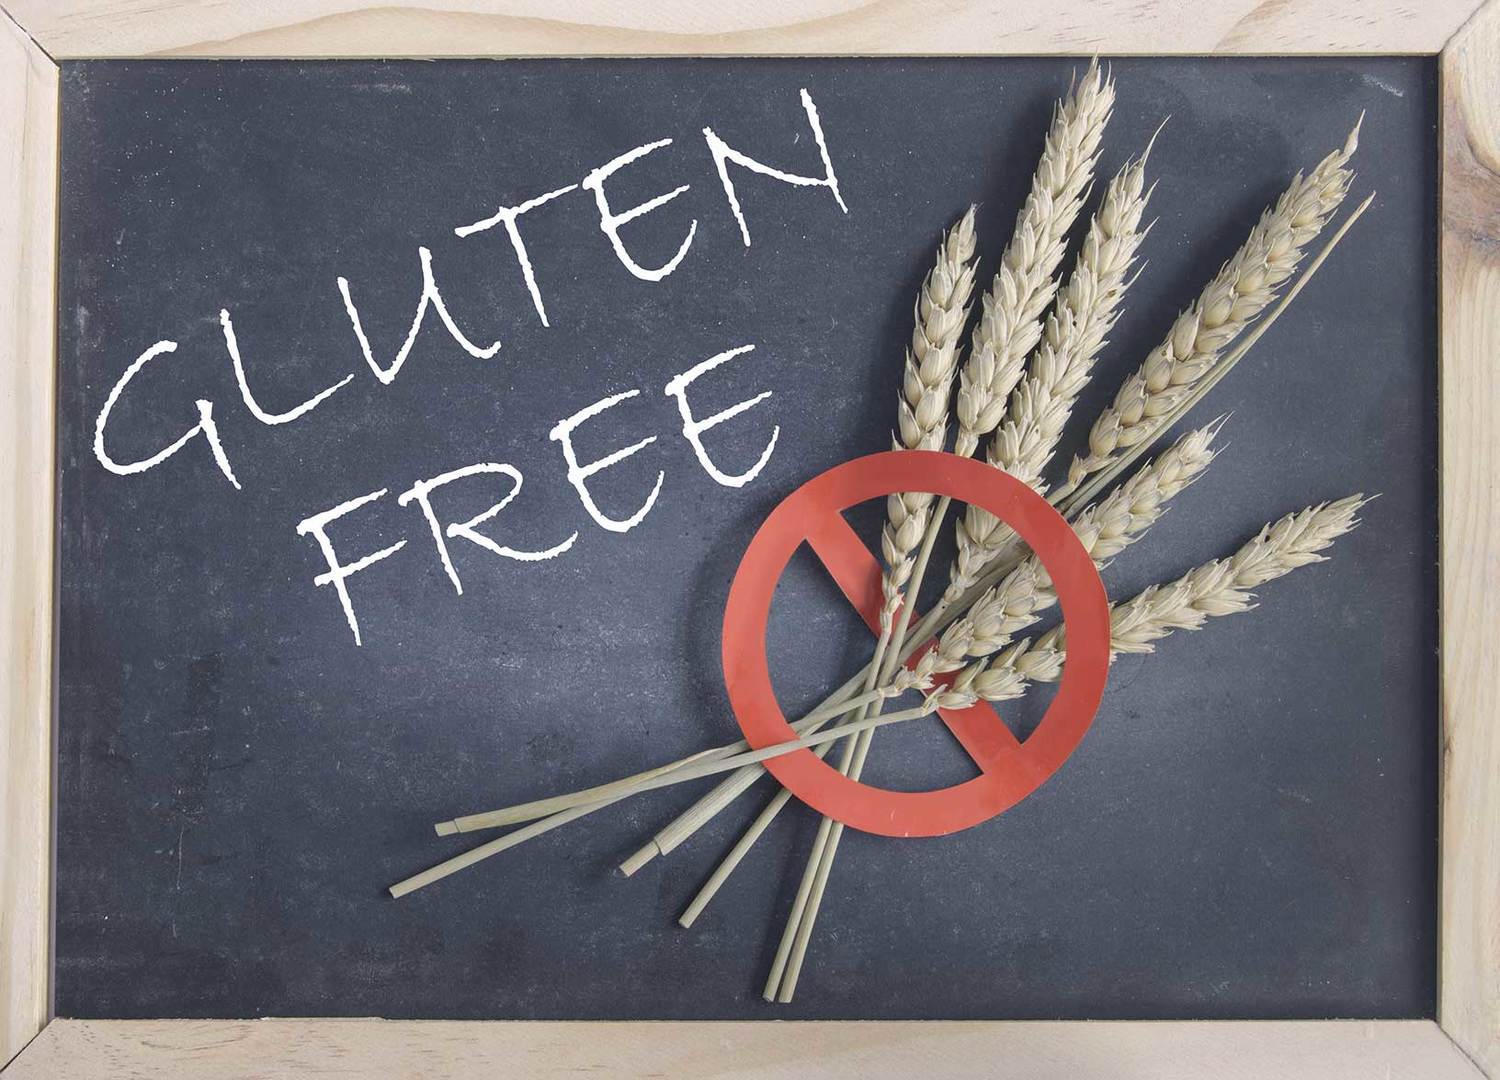 Alimenti gluten free: da luglio semplificazione per i produttori agricoli 